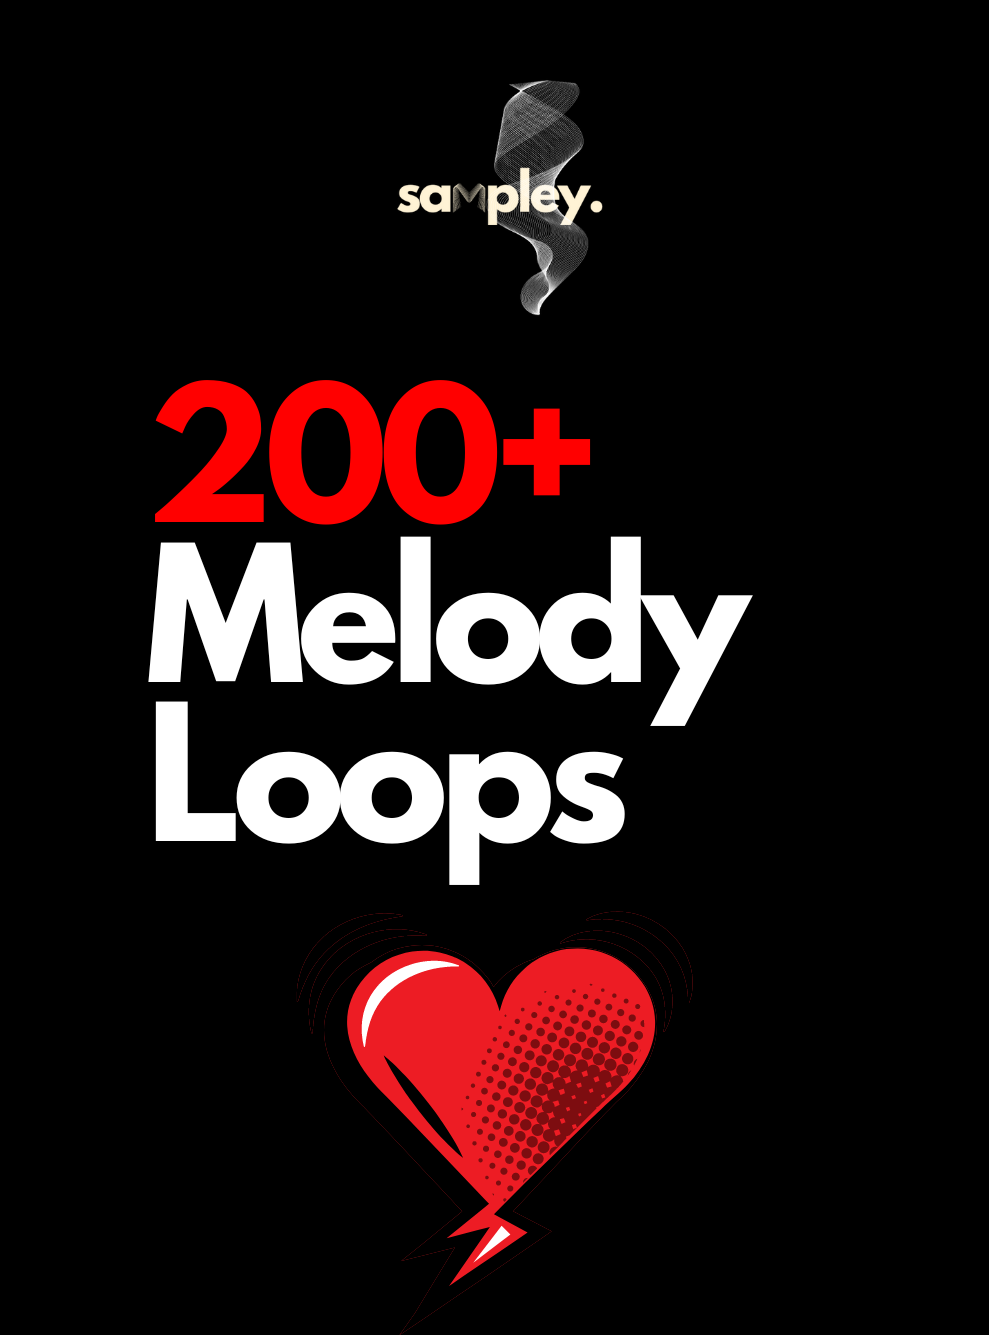 Mega Melody Loop Pack [Hiphop/Trap] LEBRON - Sampley 